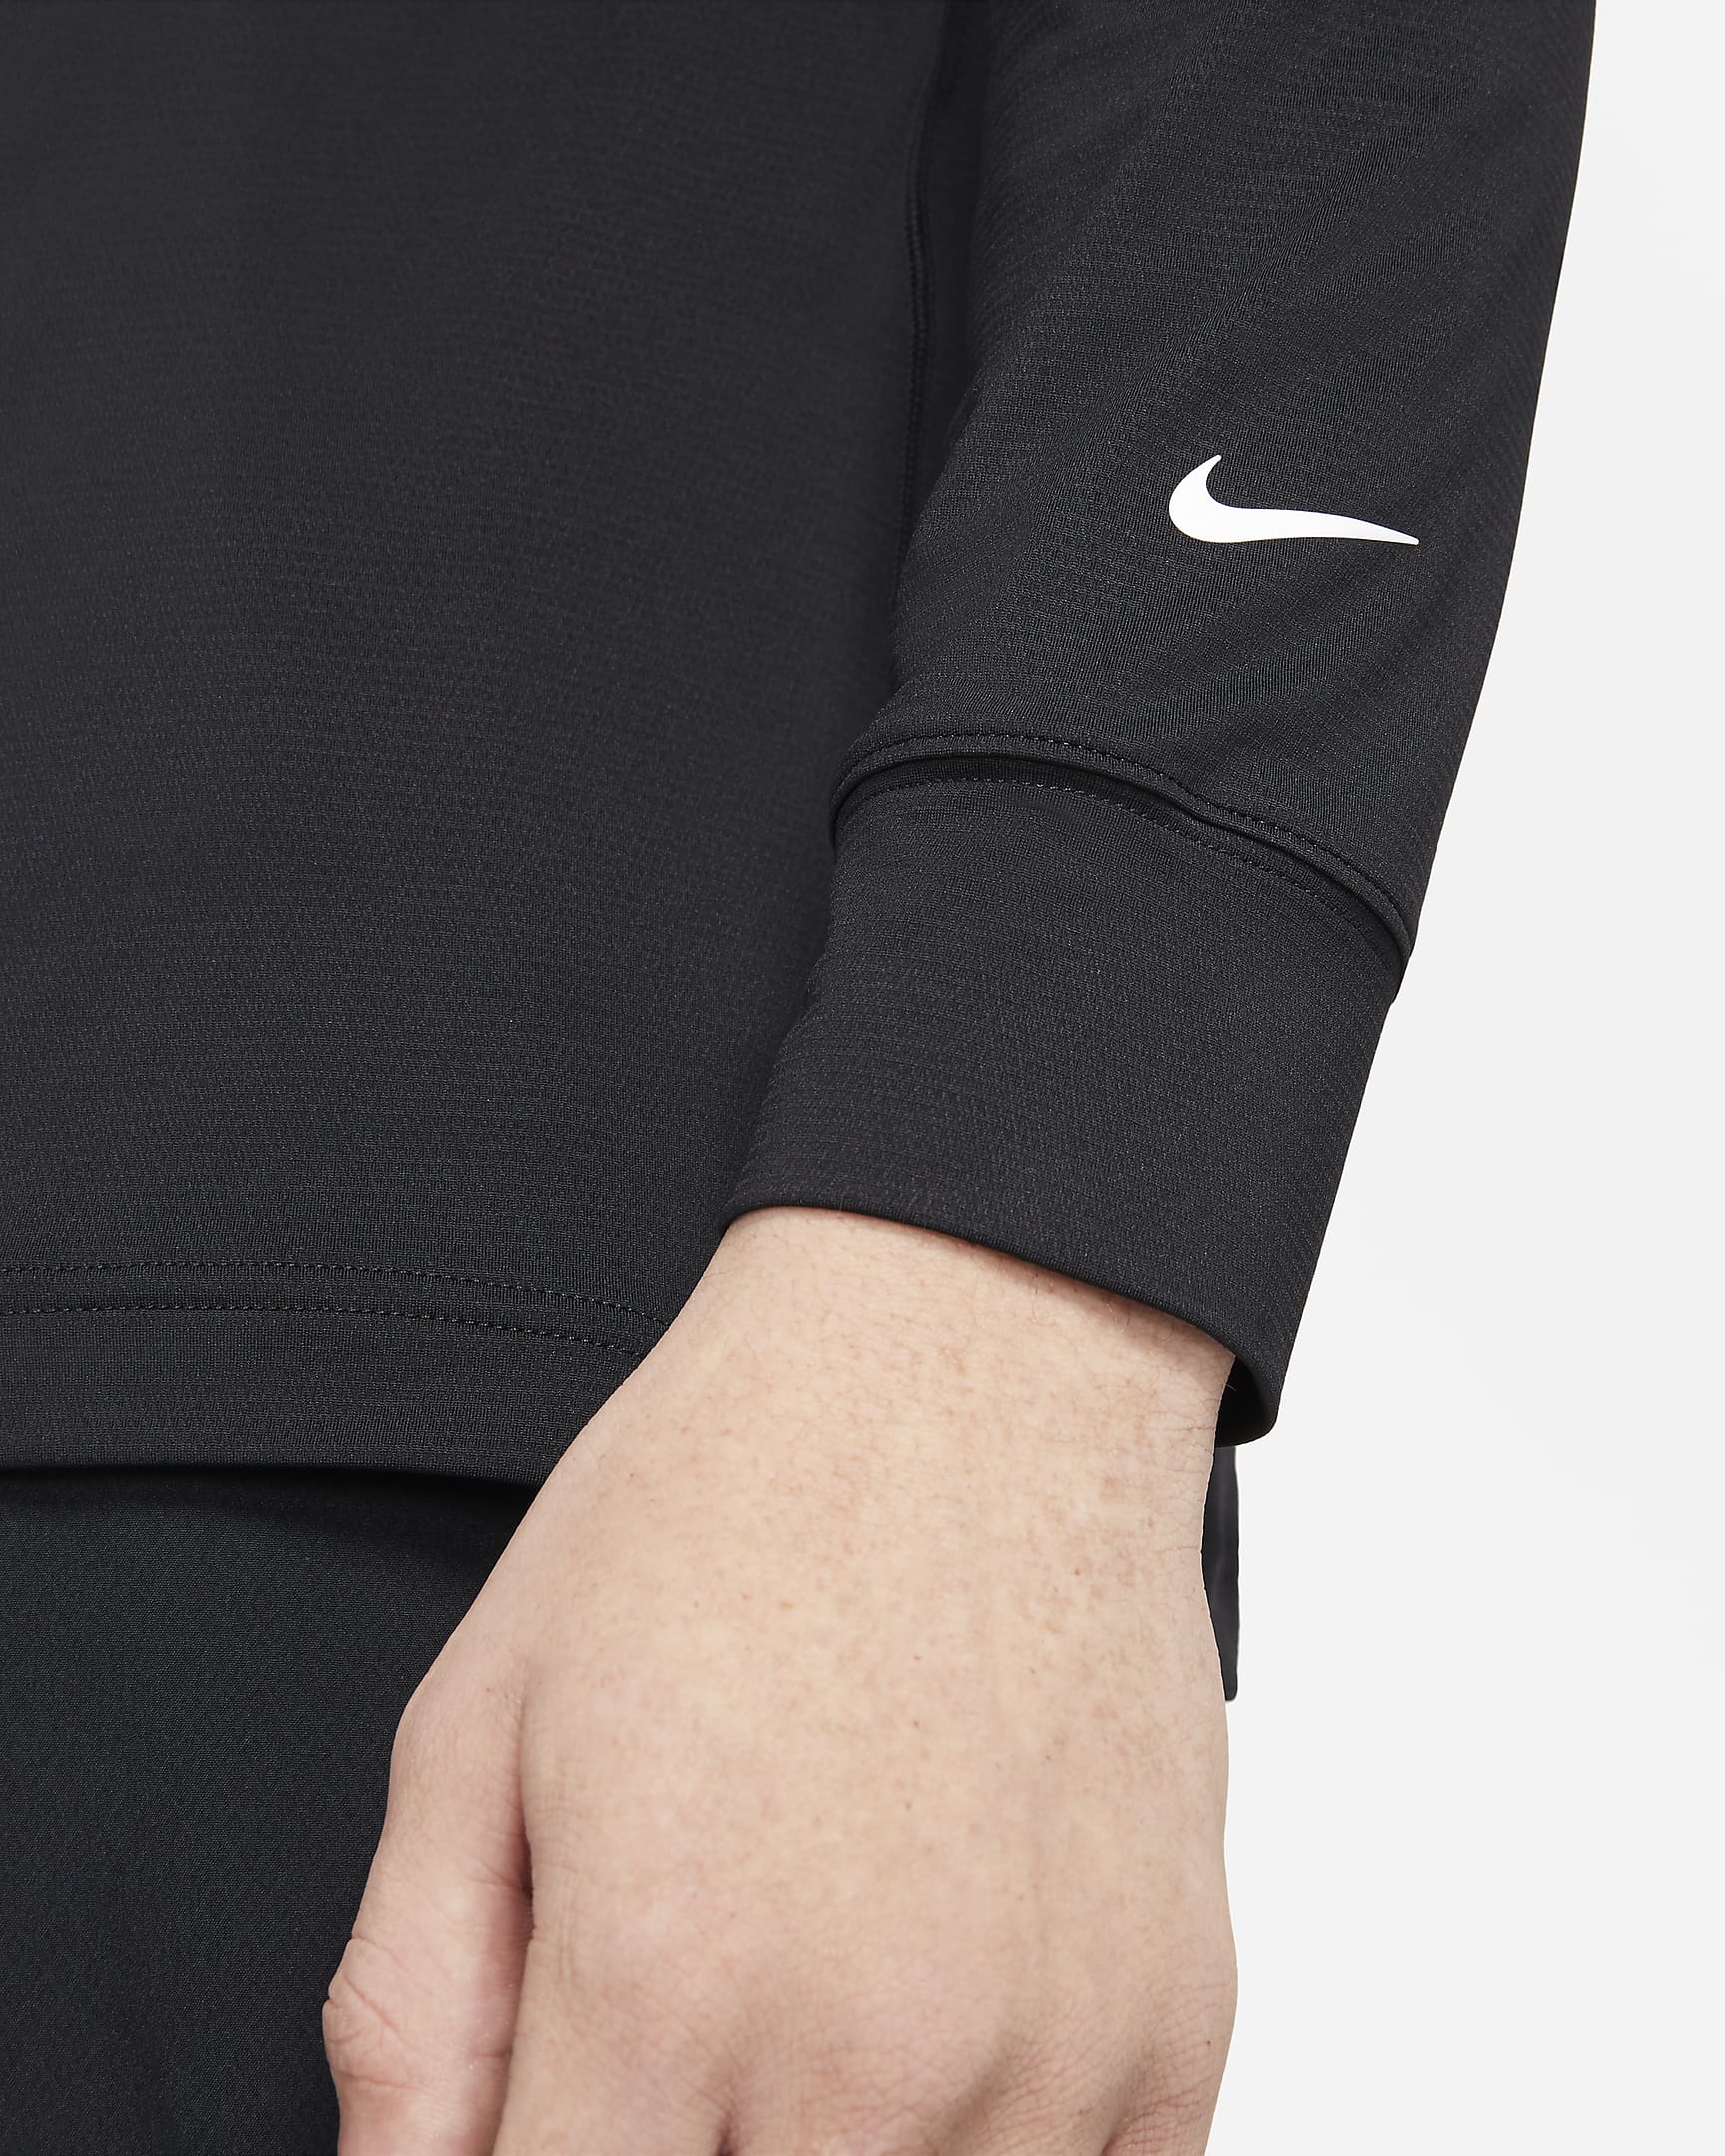 Nike Dri-FIT UV Vapor Men's Long-Sleeve Golf Top. Nike IL